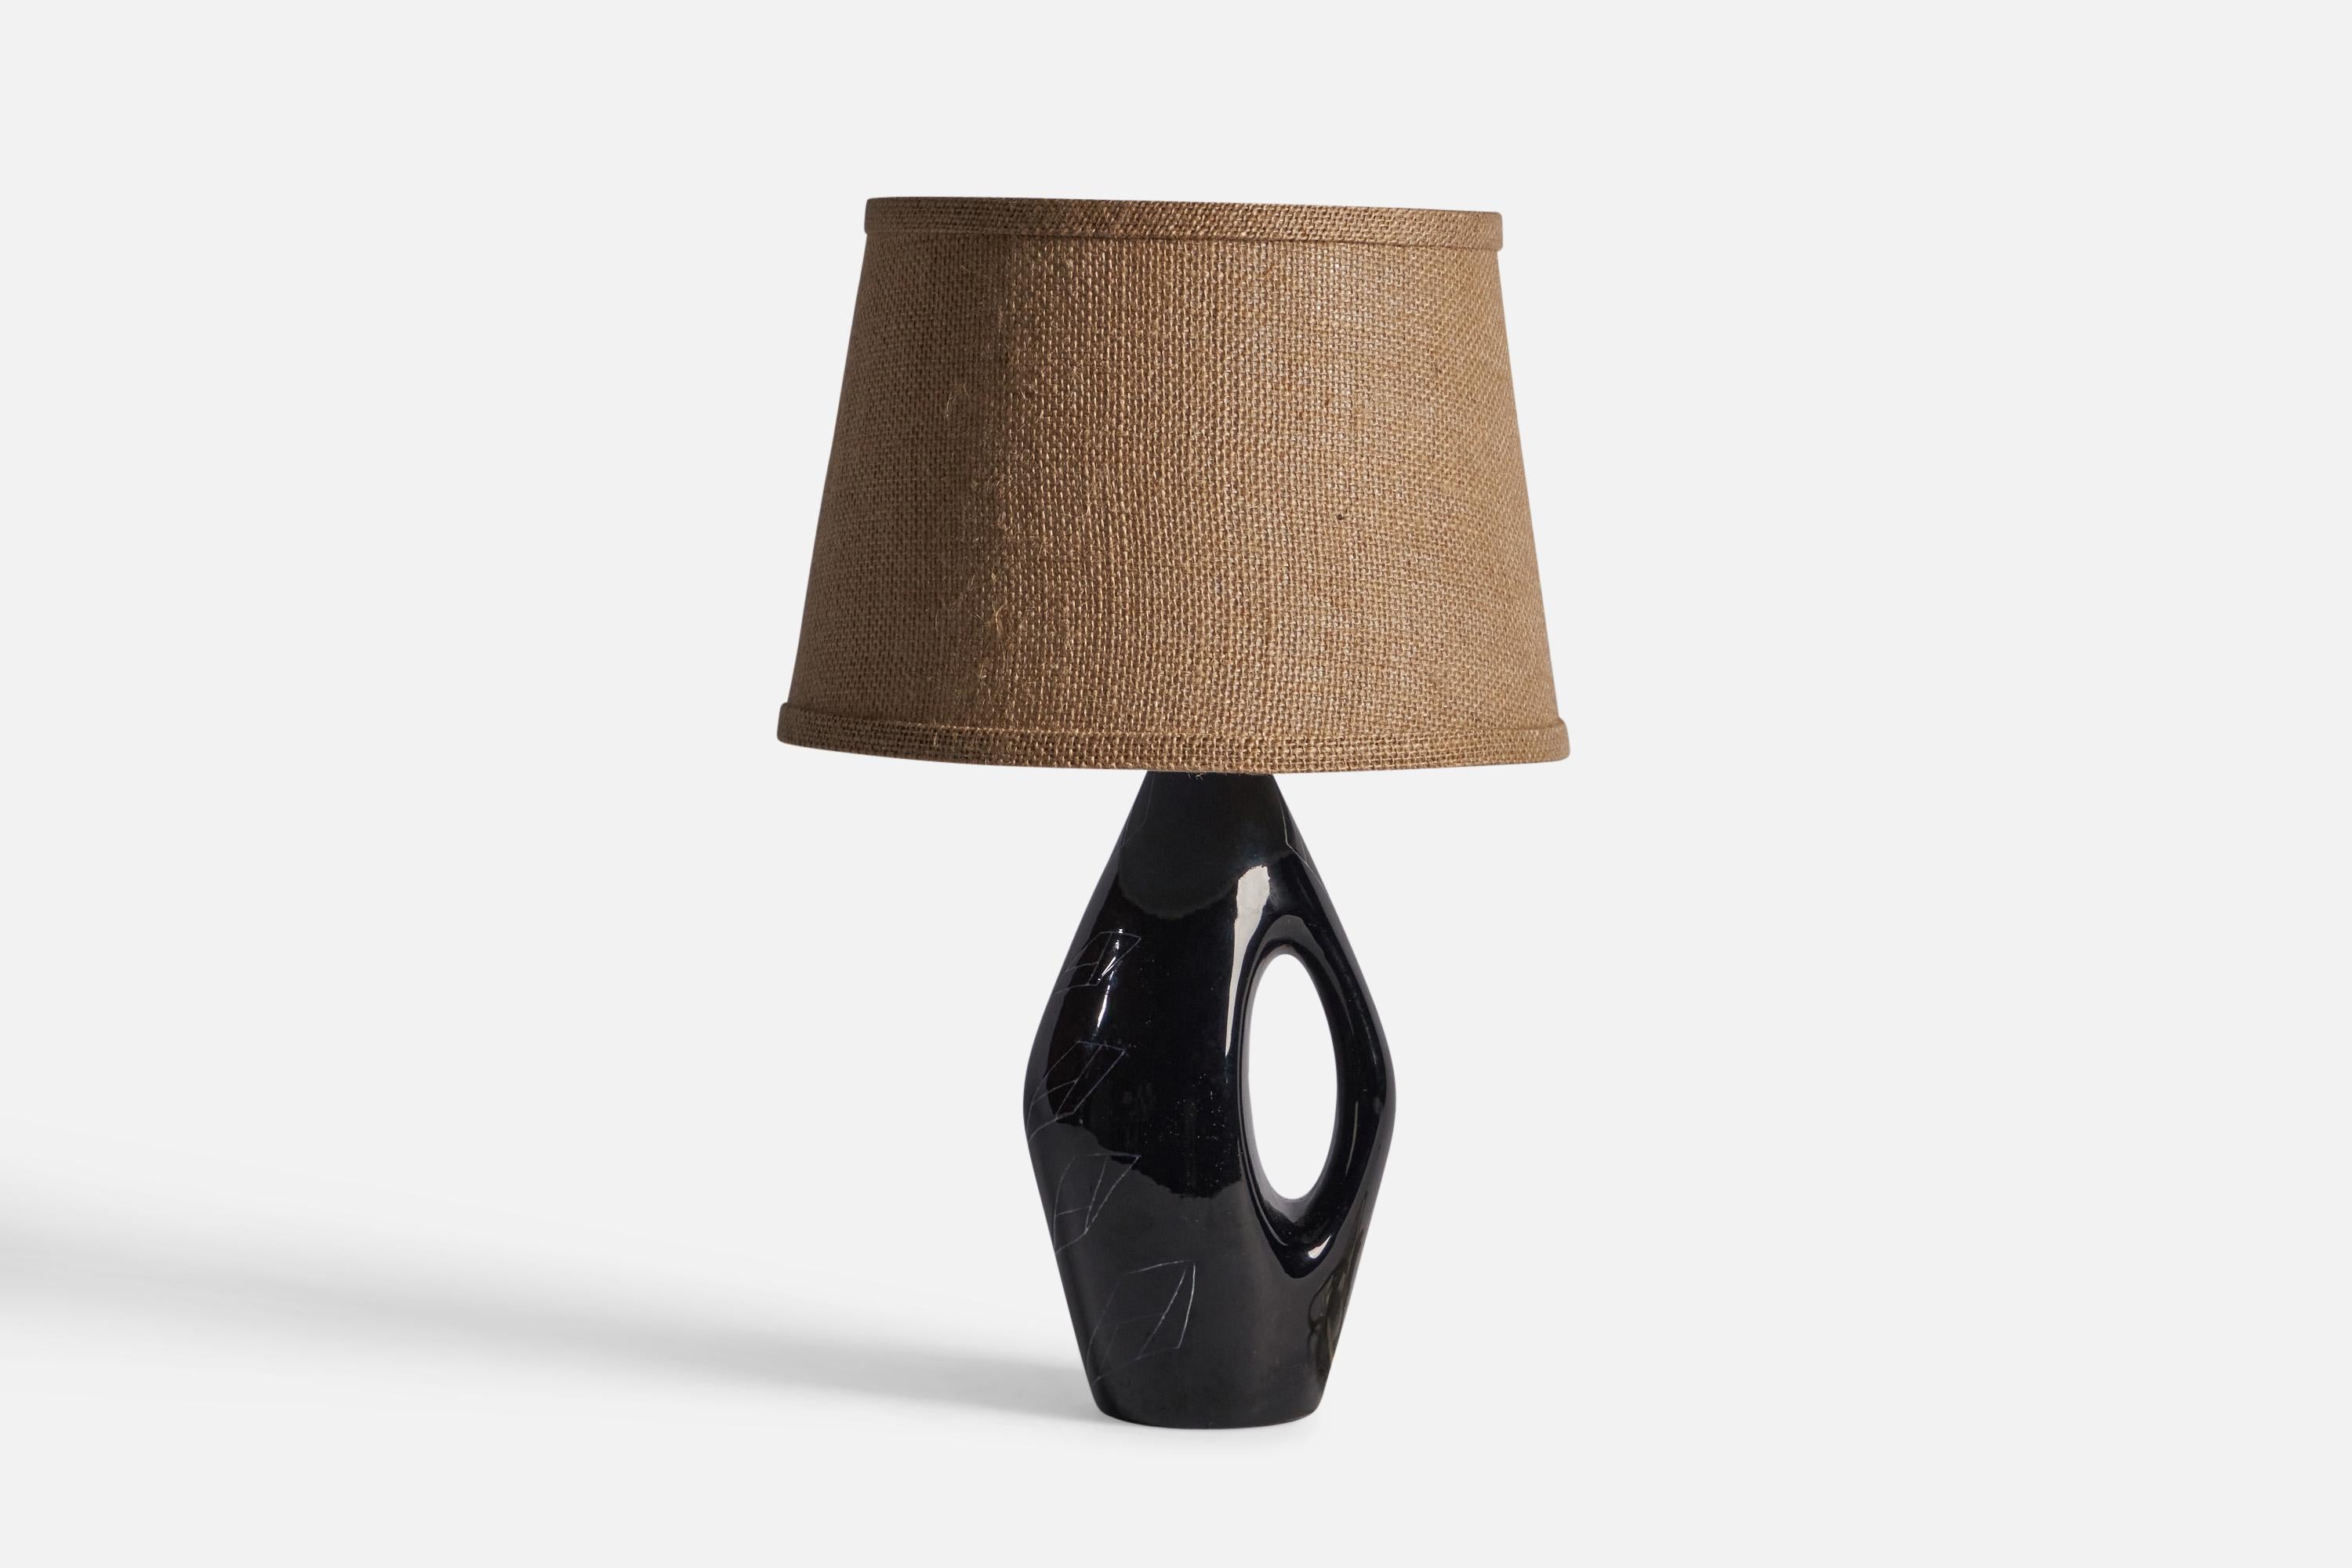 Lampe en grès émaillé noir à décor incisé, conçue et produite en Suède, années 1960.

Dimensions de la lampe (pouces) : 11.75